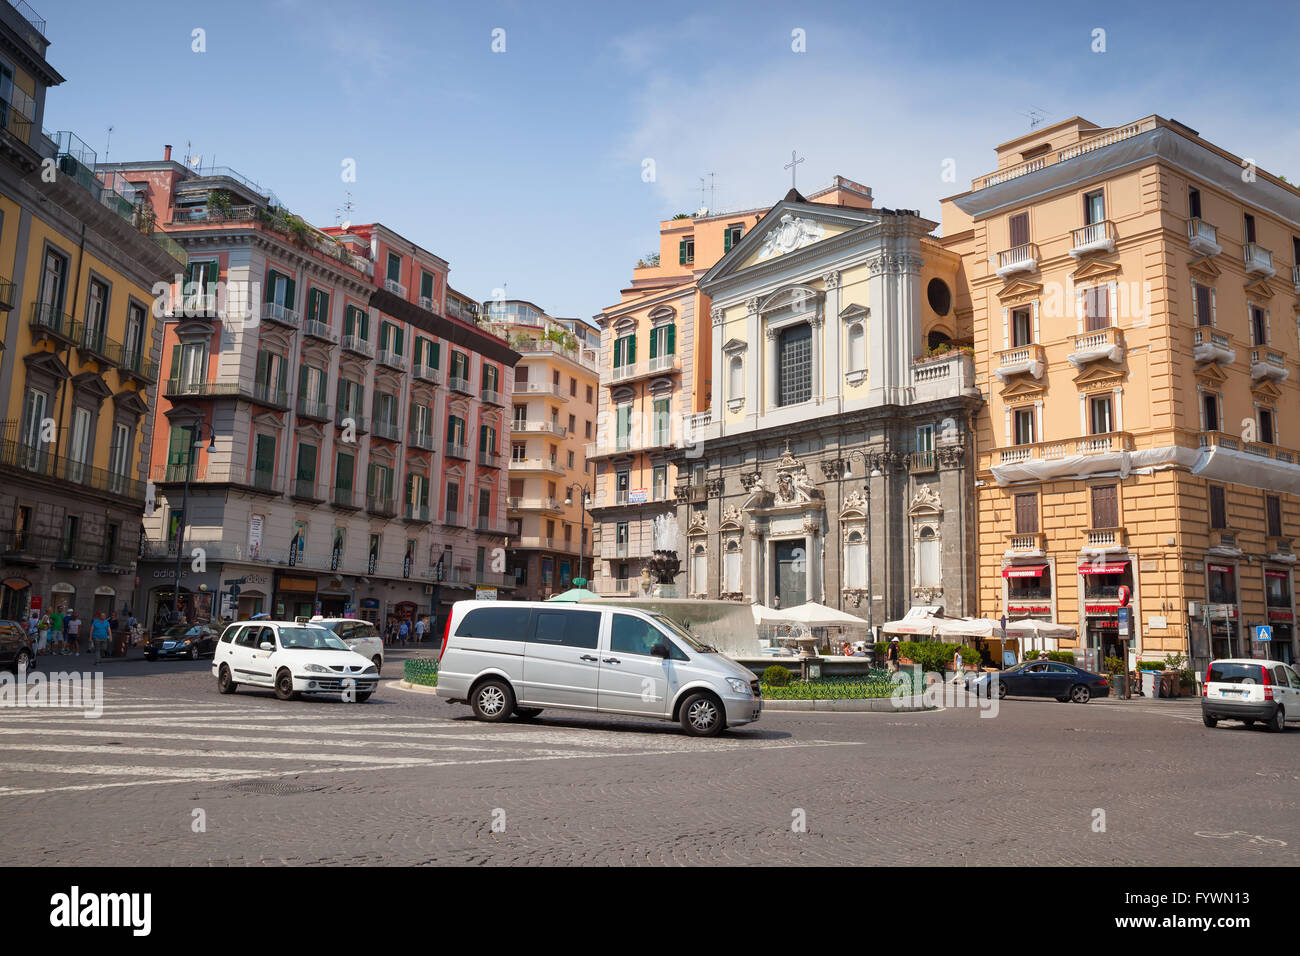 Neapel, Italien - 9. August 2015: Street view von alten Naples. Piazza Trieste E Trento, Fassade der Galleria Umberto Stockfoto